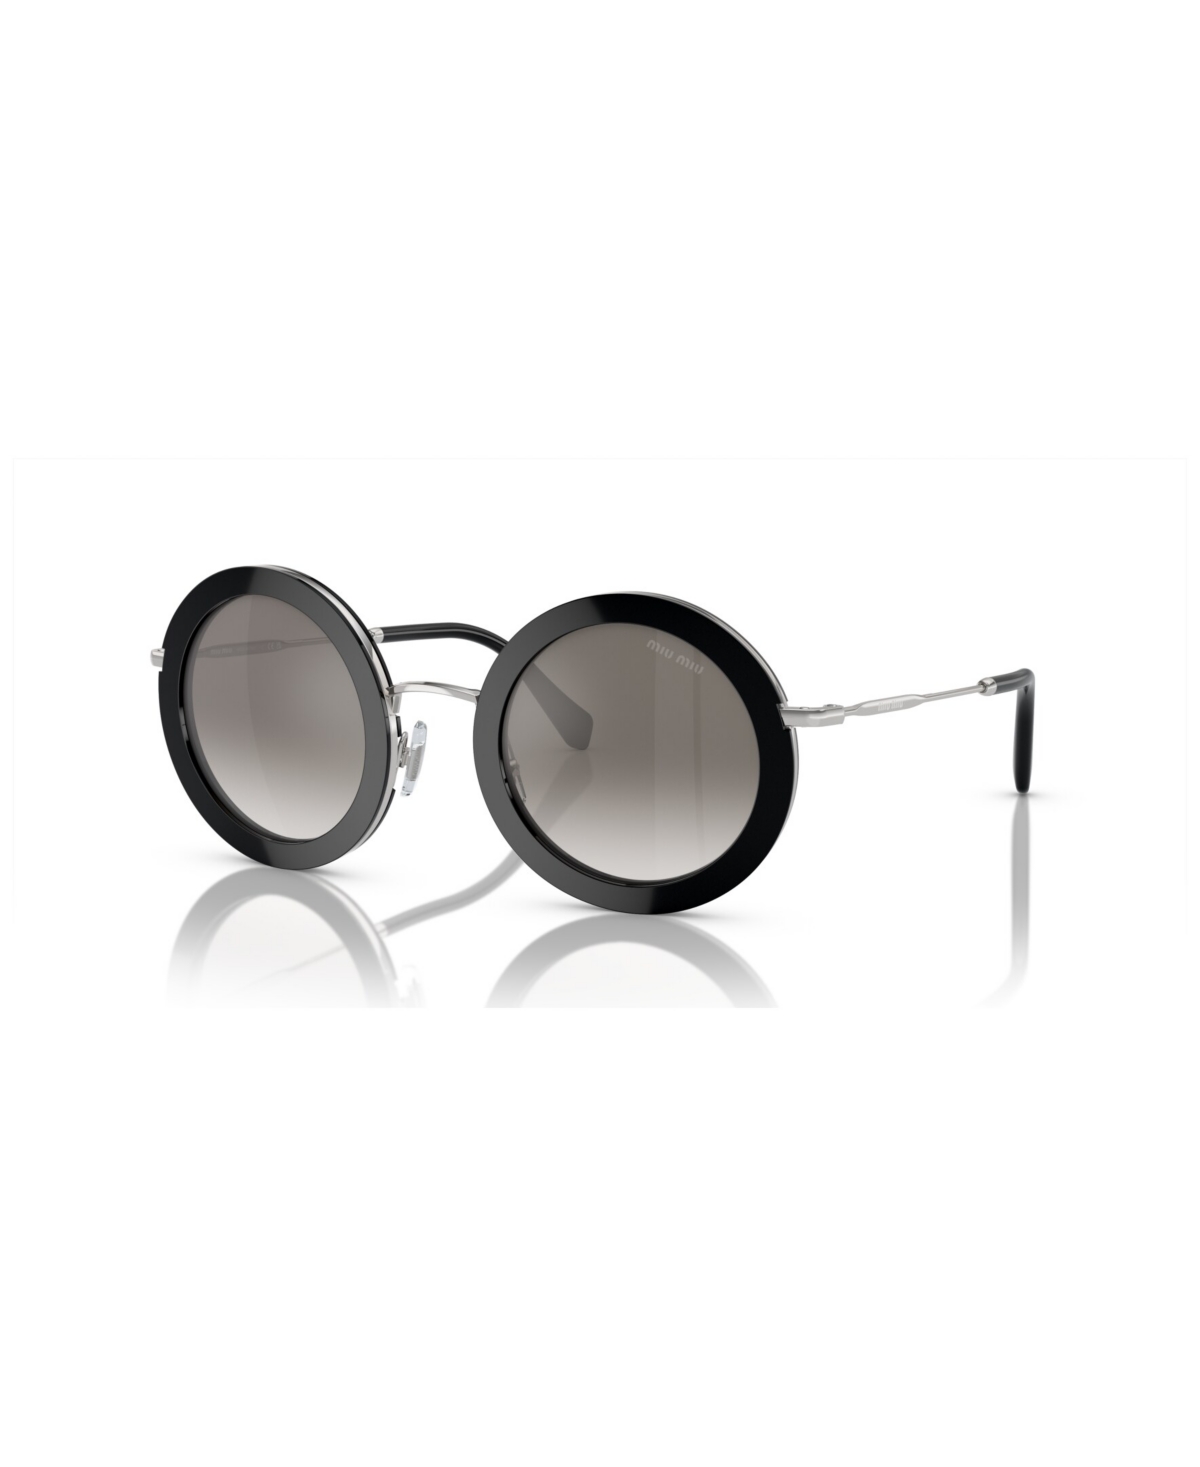 Miu Miu Women's Sunglasses, Mu 59us In Black